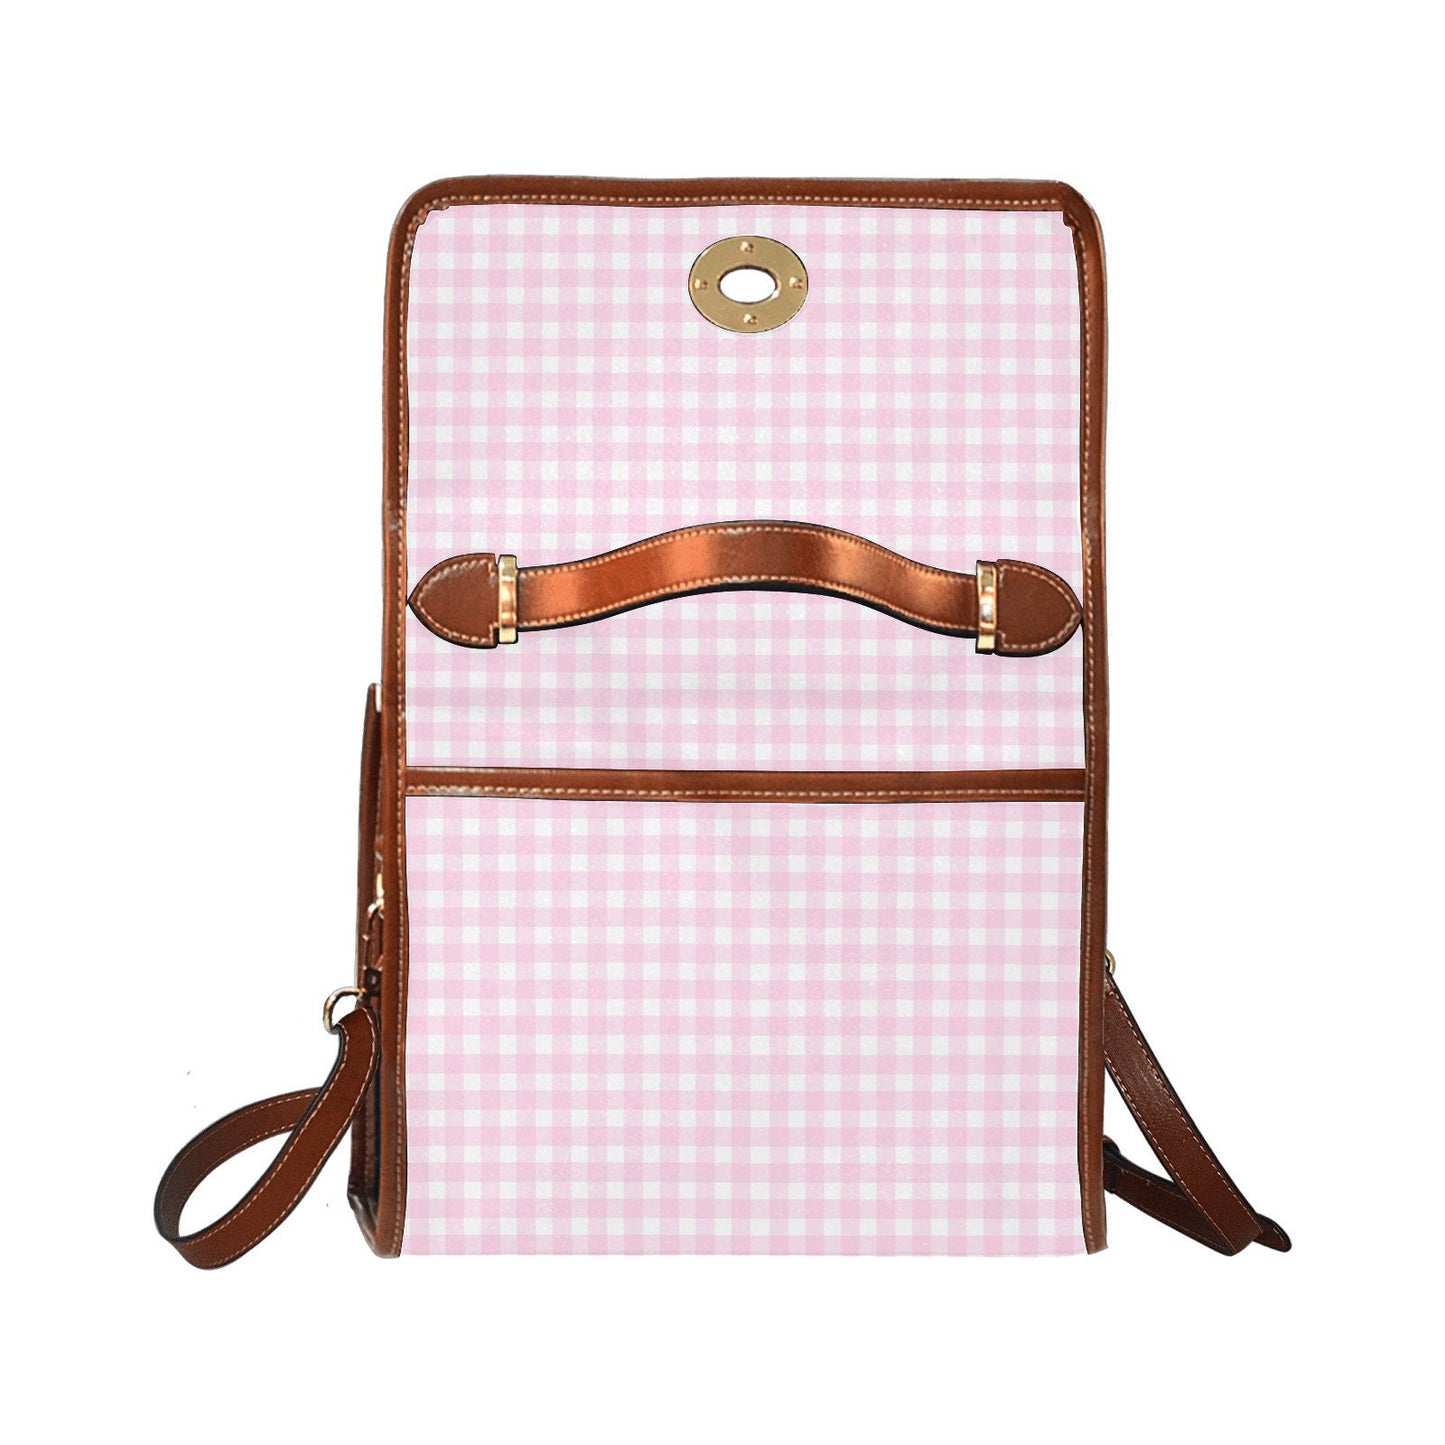 Damenhandtasche, Retro-Handtasche, rosa Gingham-Geldbörse, rosa Geldbörse, Damen-Geldbörse, Vintage-inspirierte Tasche, Pinup-Stil, rosa Gingham-Handtasche